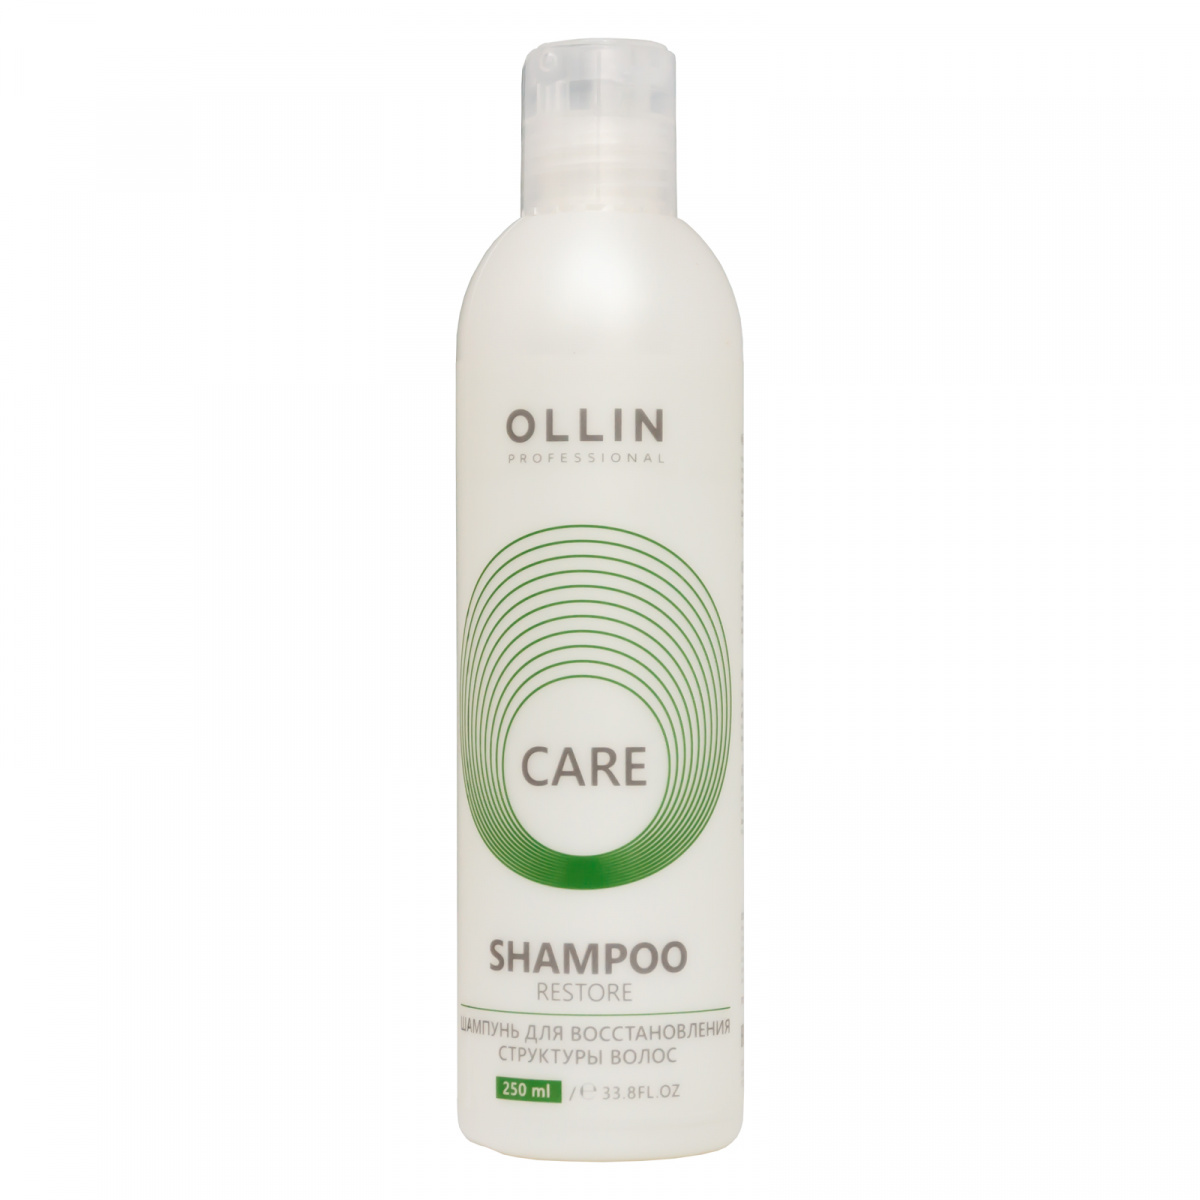 Ollin Professional Care Restore Shampoo - Шампунь для восстановления структуры волос 250 мл Ollin Professional (Россия) купить по цене 286 руб.